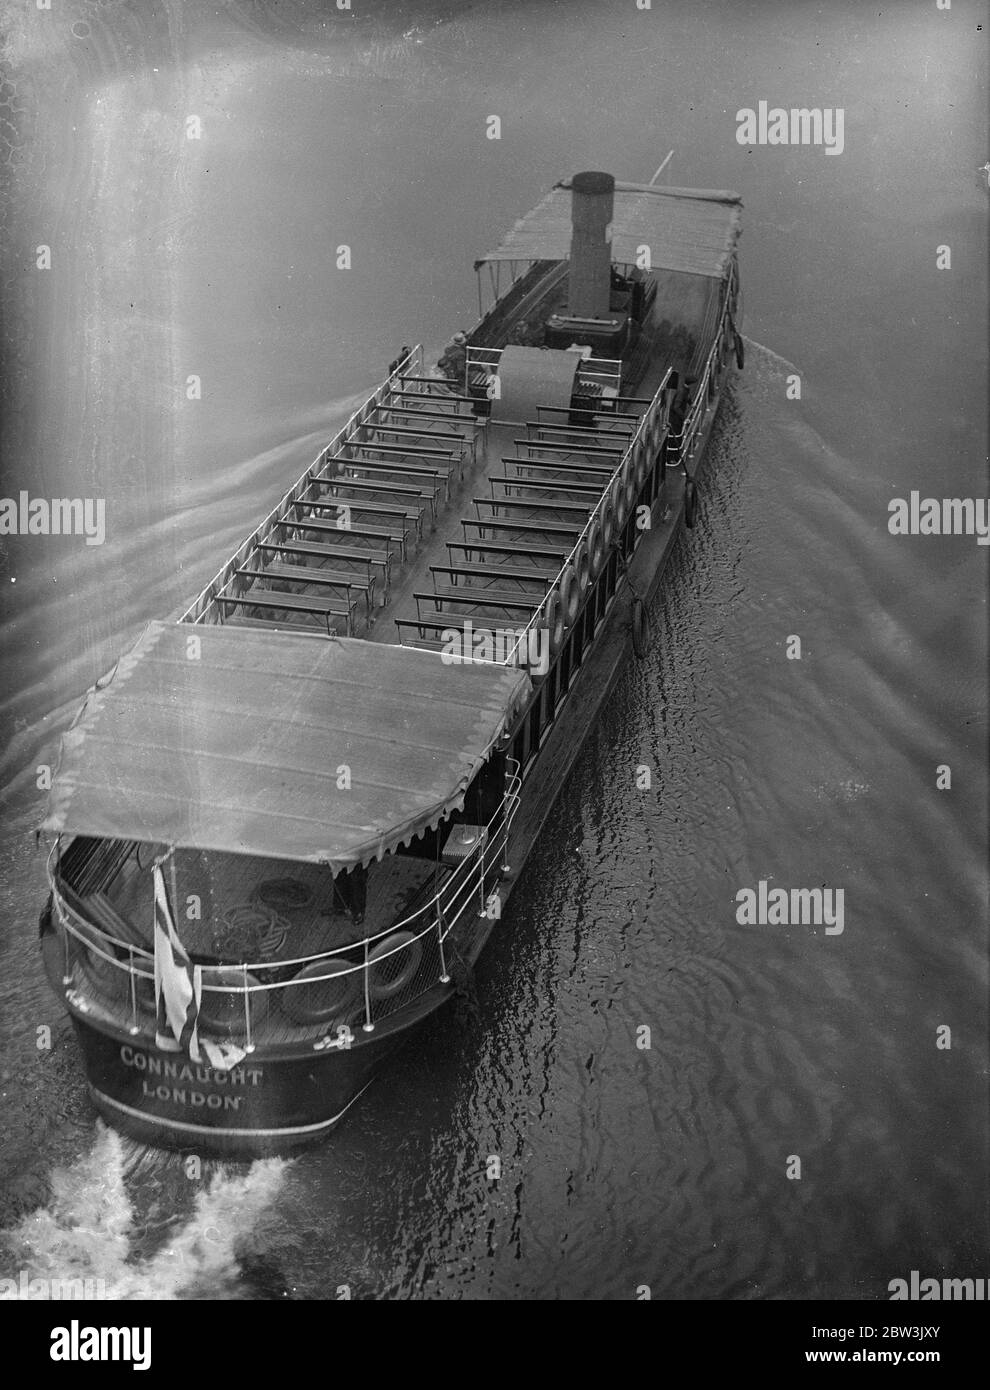 Vergnügungsboote auf der Themse leer als ostern Urlauber zittern . Die eisige Explosion des Ostermontags bedeutete eine schlanke Zeit für die Themse Vergnügungsboote. Obwohl die Boote liefen, um Zeitplan sie praktisch leer waren. Foto zeigt ein leeres Ausflugsboot, das den Fluss hinauf nach Hampton Court fährt. 13. April 1936 Stockfoto